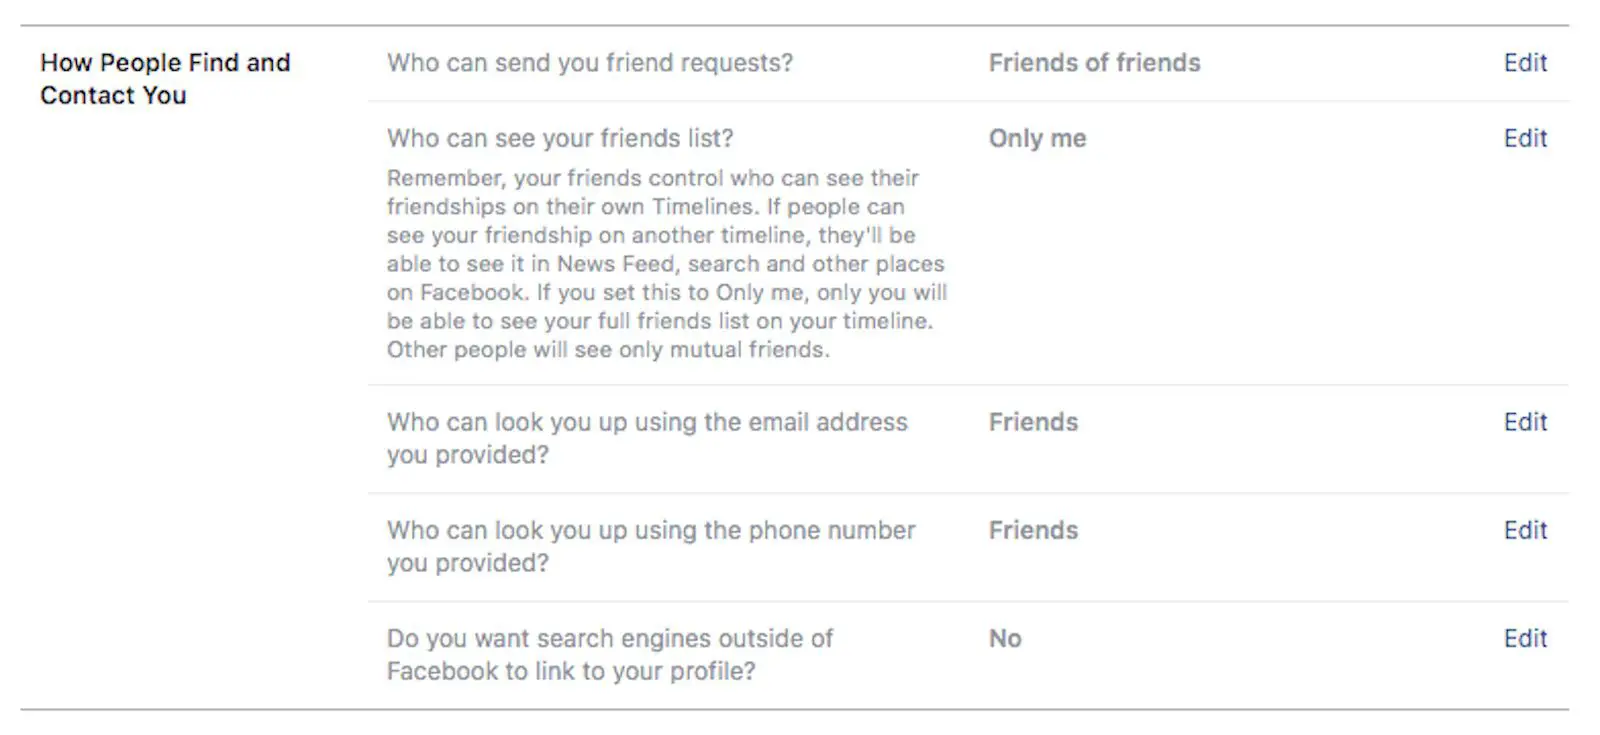 Modificando como as pessoas podem encontrar e entrar em contato com você no Facebook.com